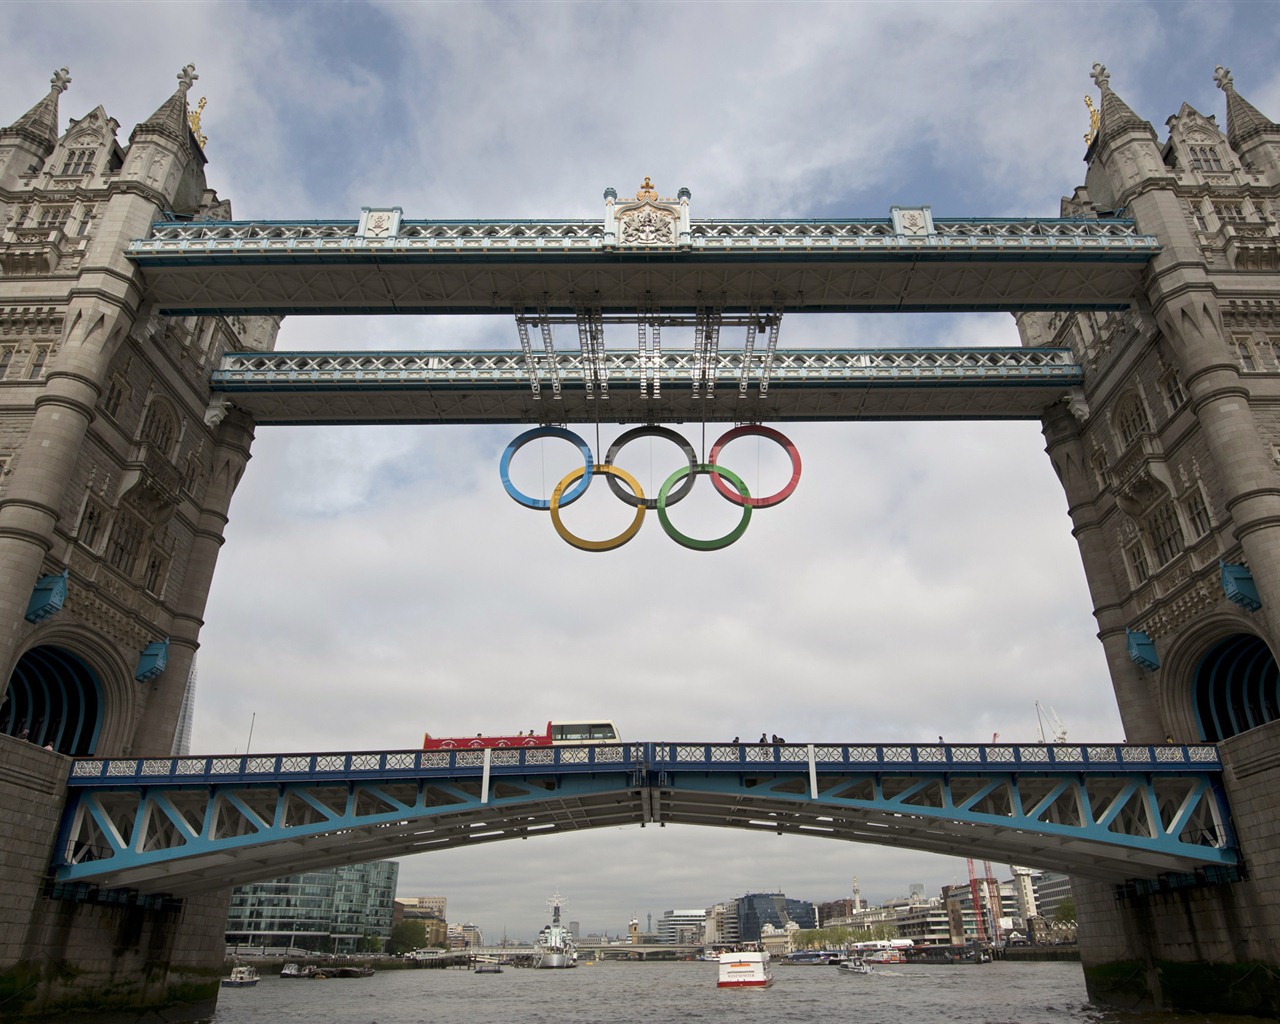 Londres 2012 Olimpiadas fondos temáticos (1) #27 - 1280x1024